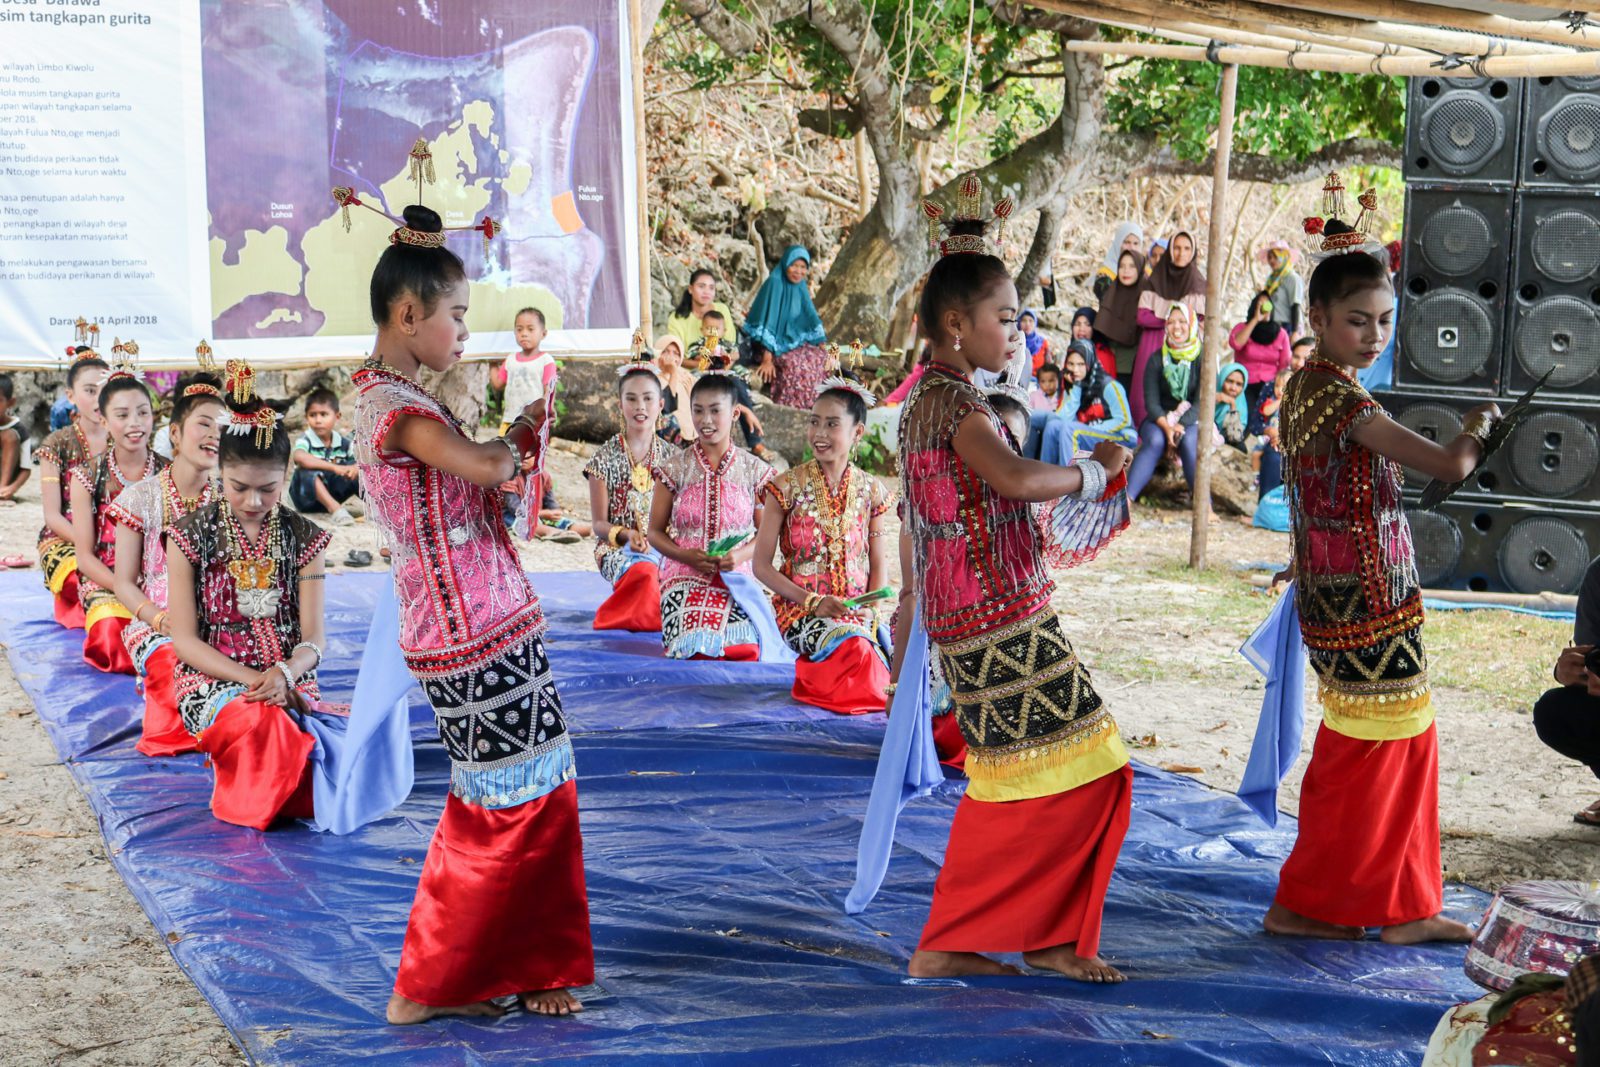 Larangi, the traditional dance of Kaledupa Island.